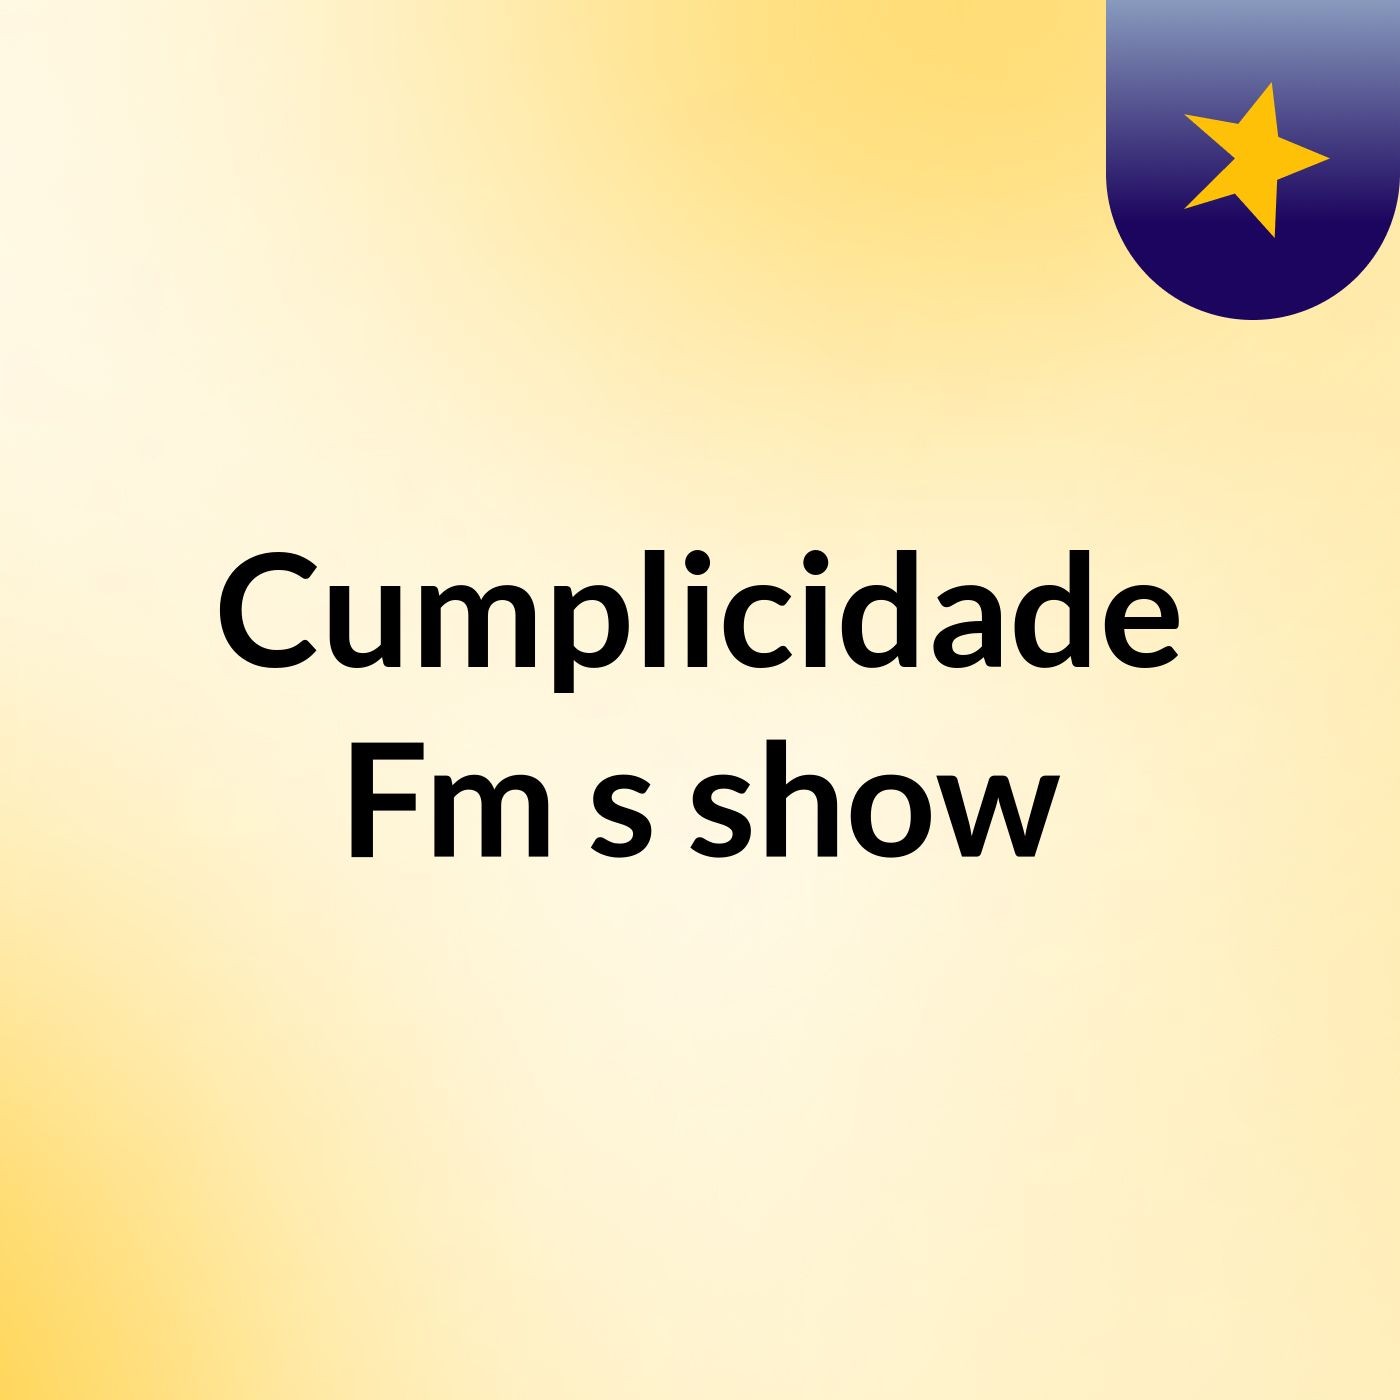 Cumplicidade Fm's show